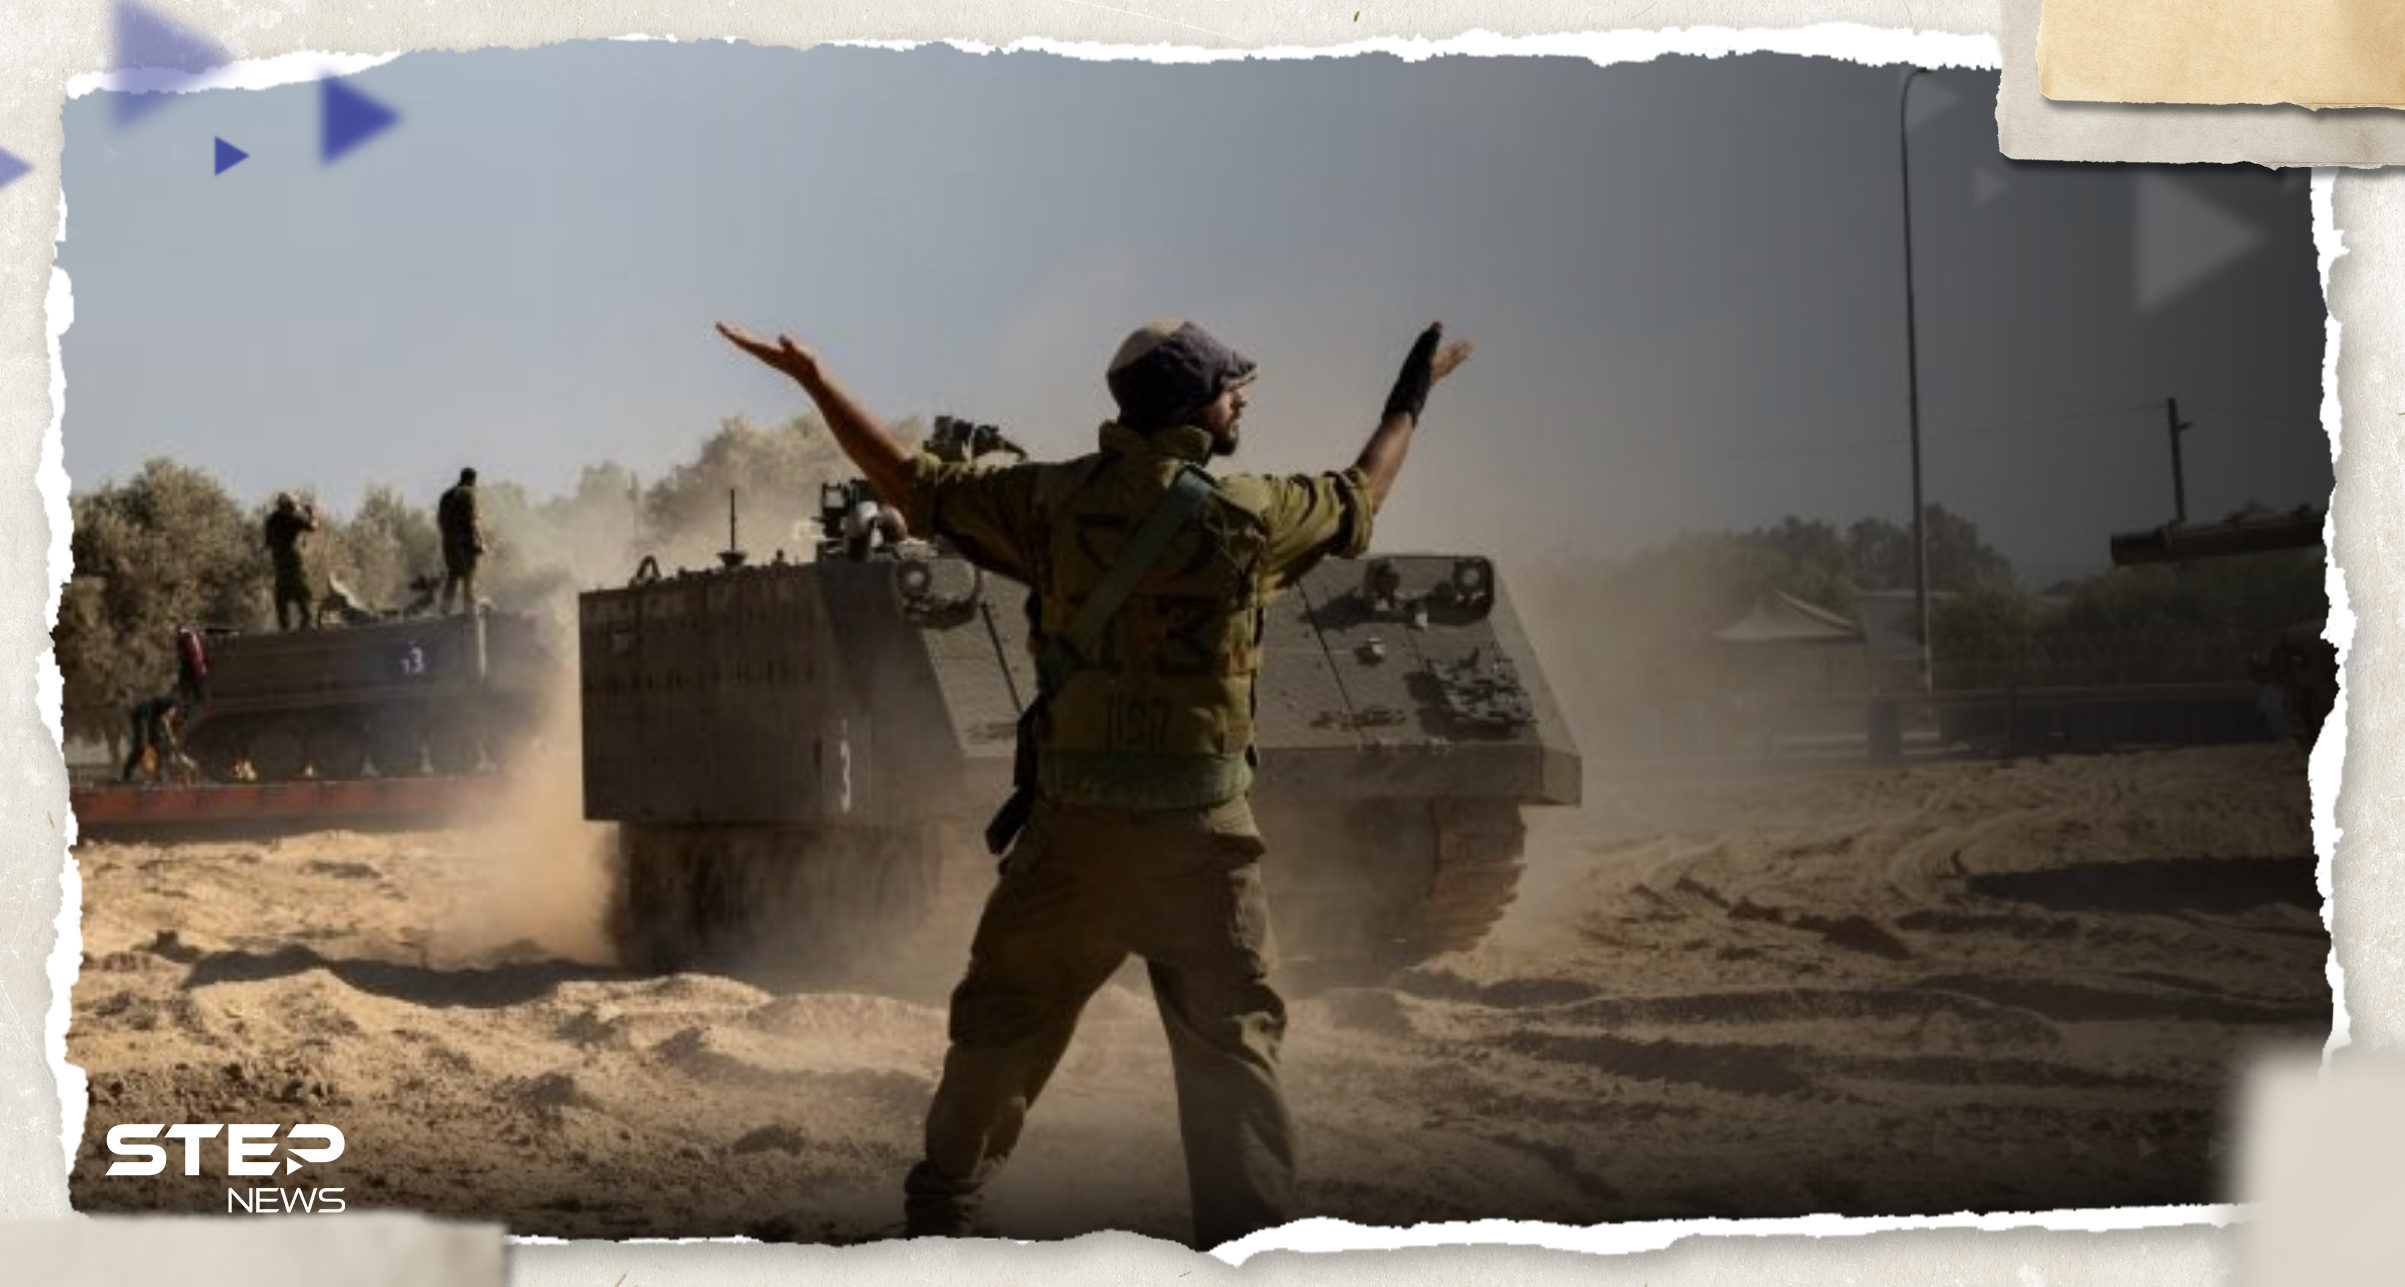 ‏أقدم جندي احتياطي في إسرائيل يتحدث عن نبوءات تتحقق ويدعو اليهود لقتل العرب فوراً 